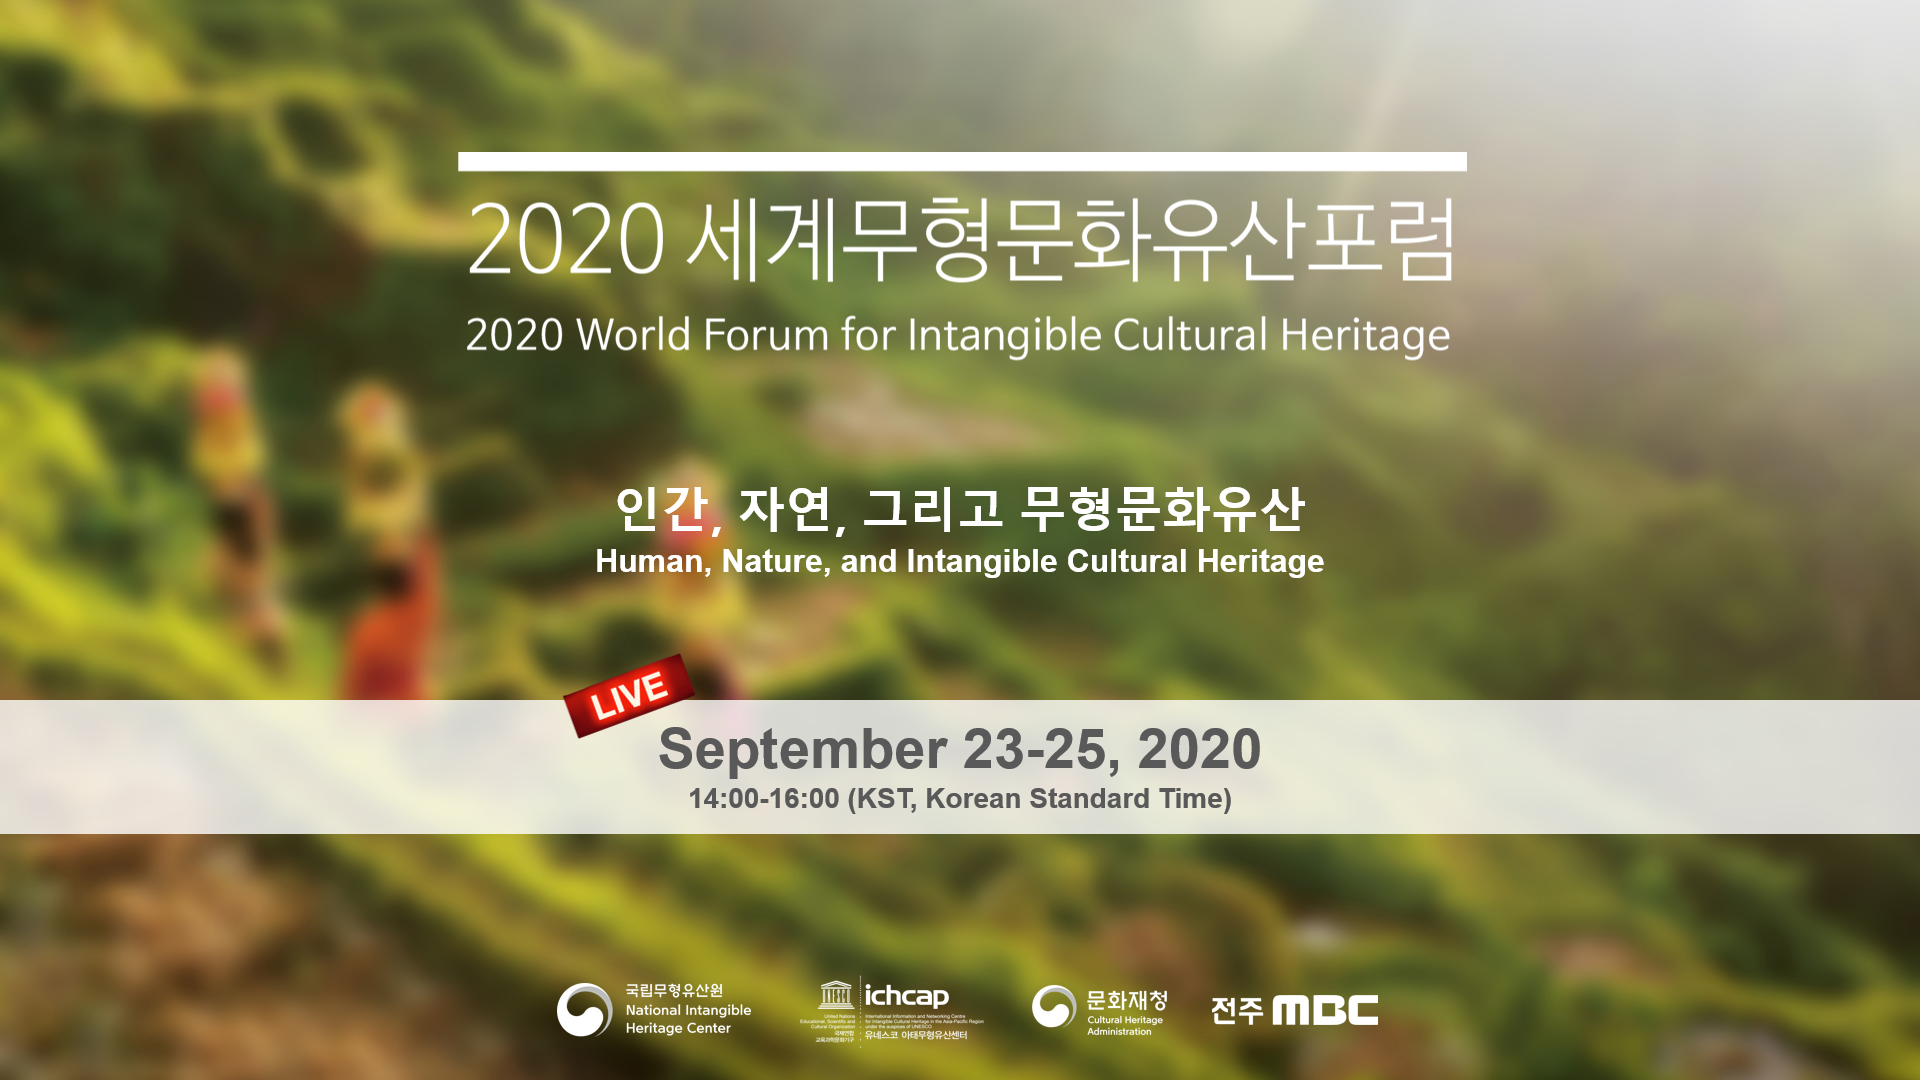 2020-세계무형문화유산포럼-유네스코-웨비나-키비쥬얼